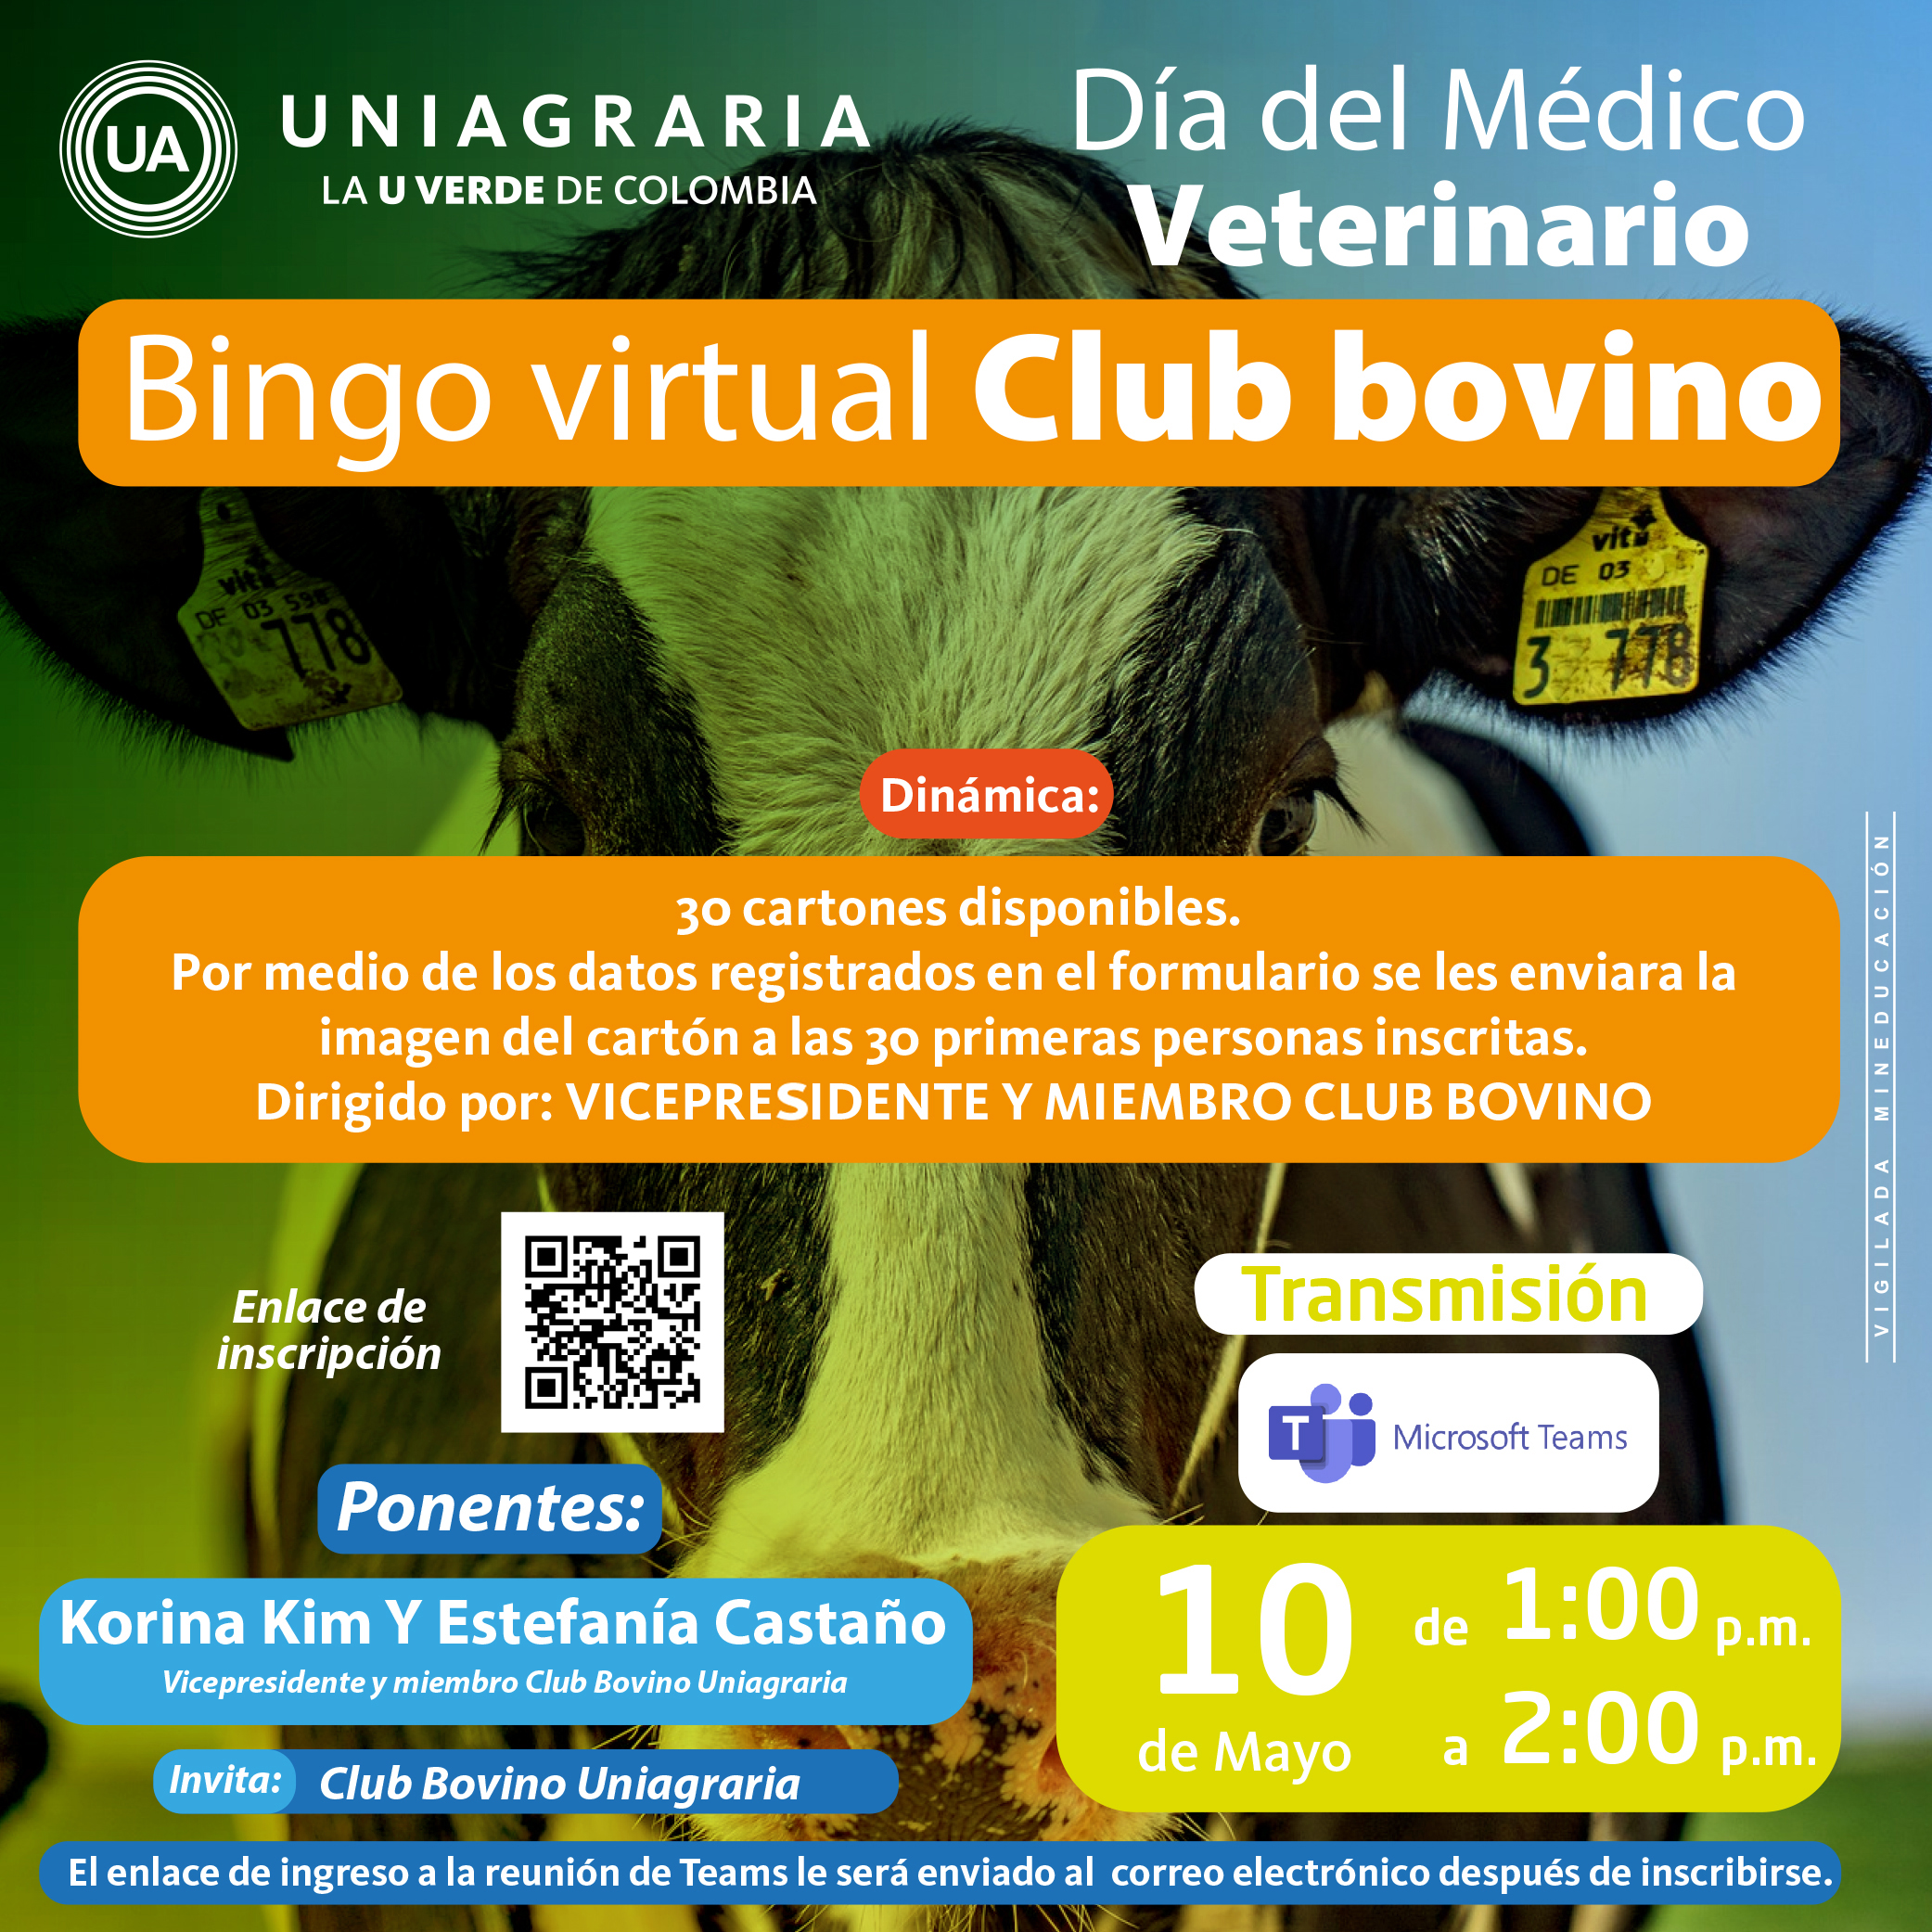 Bingo virtual Club bovino